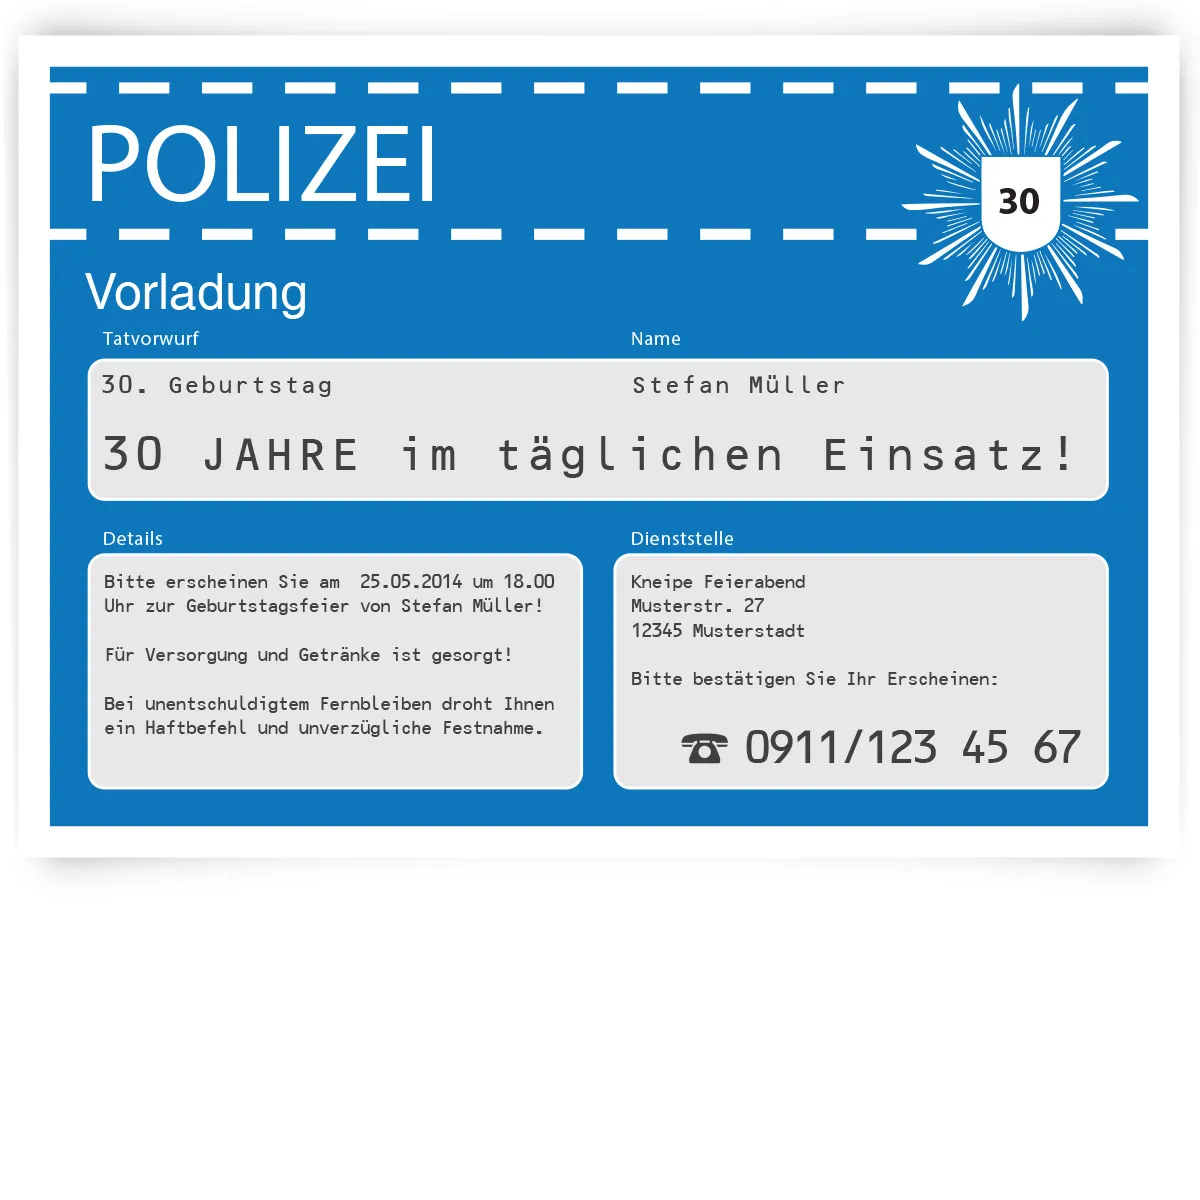 Einladungskarte als Polizeivorladung - Blau